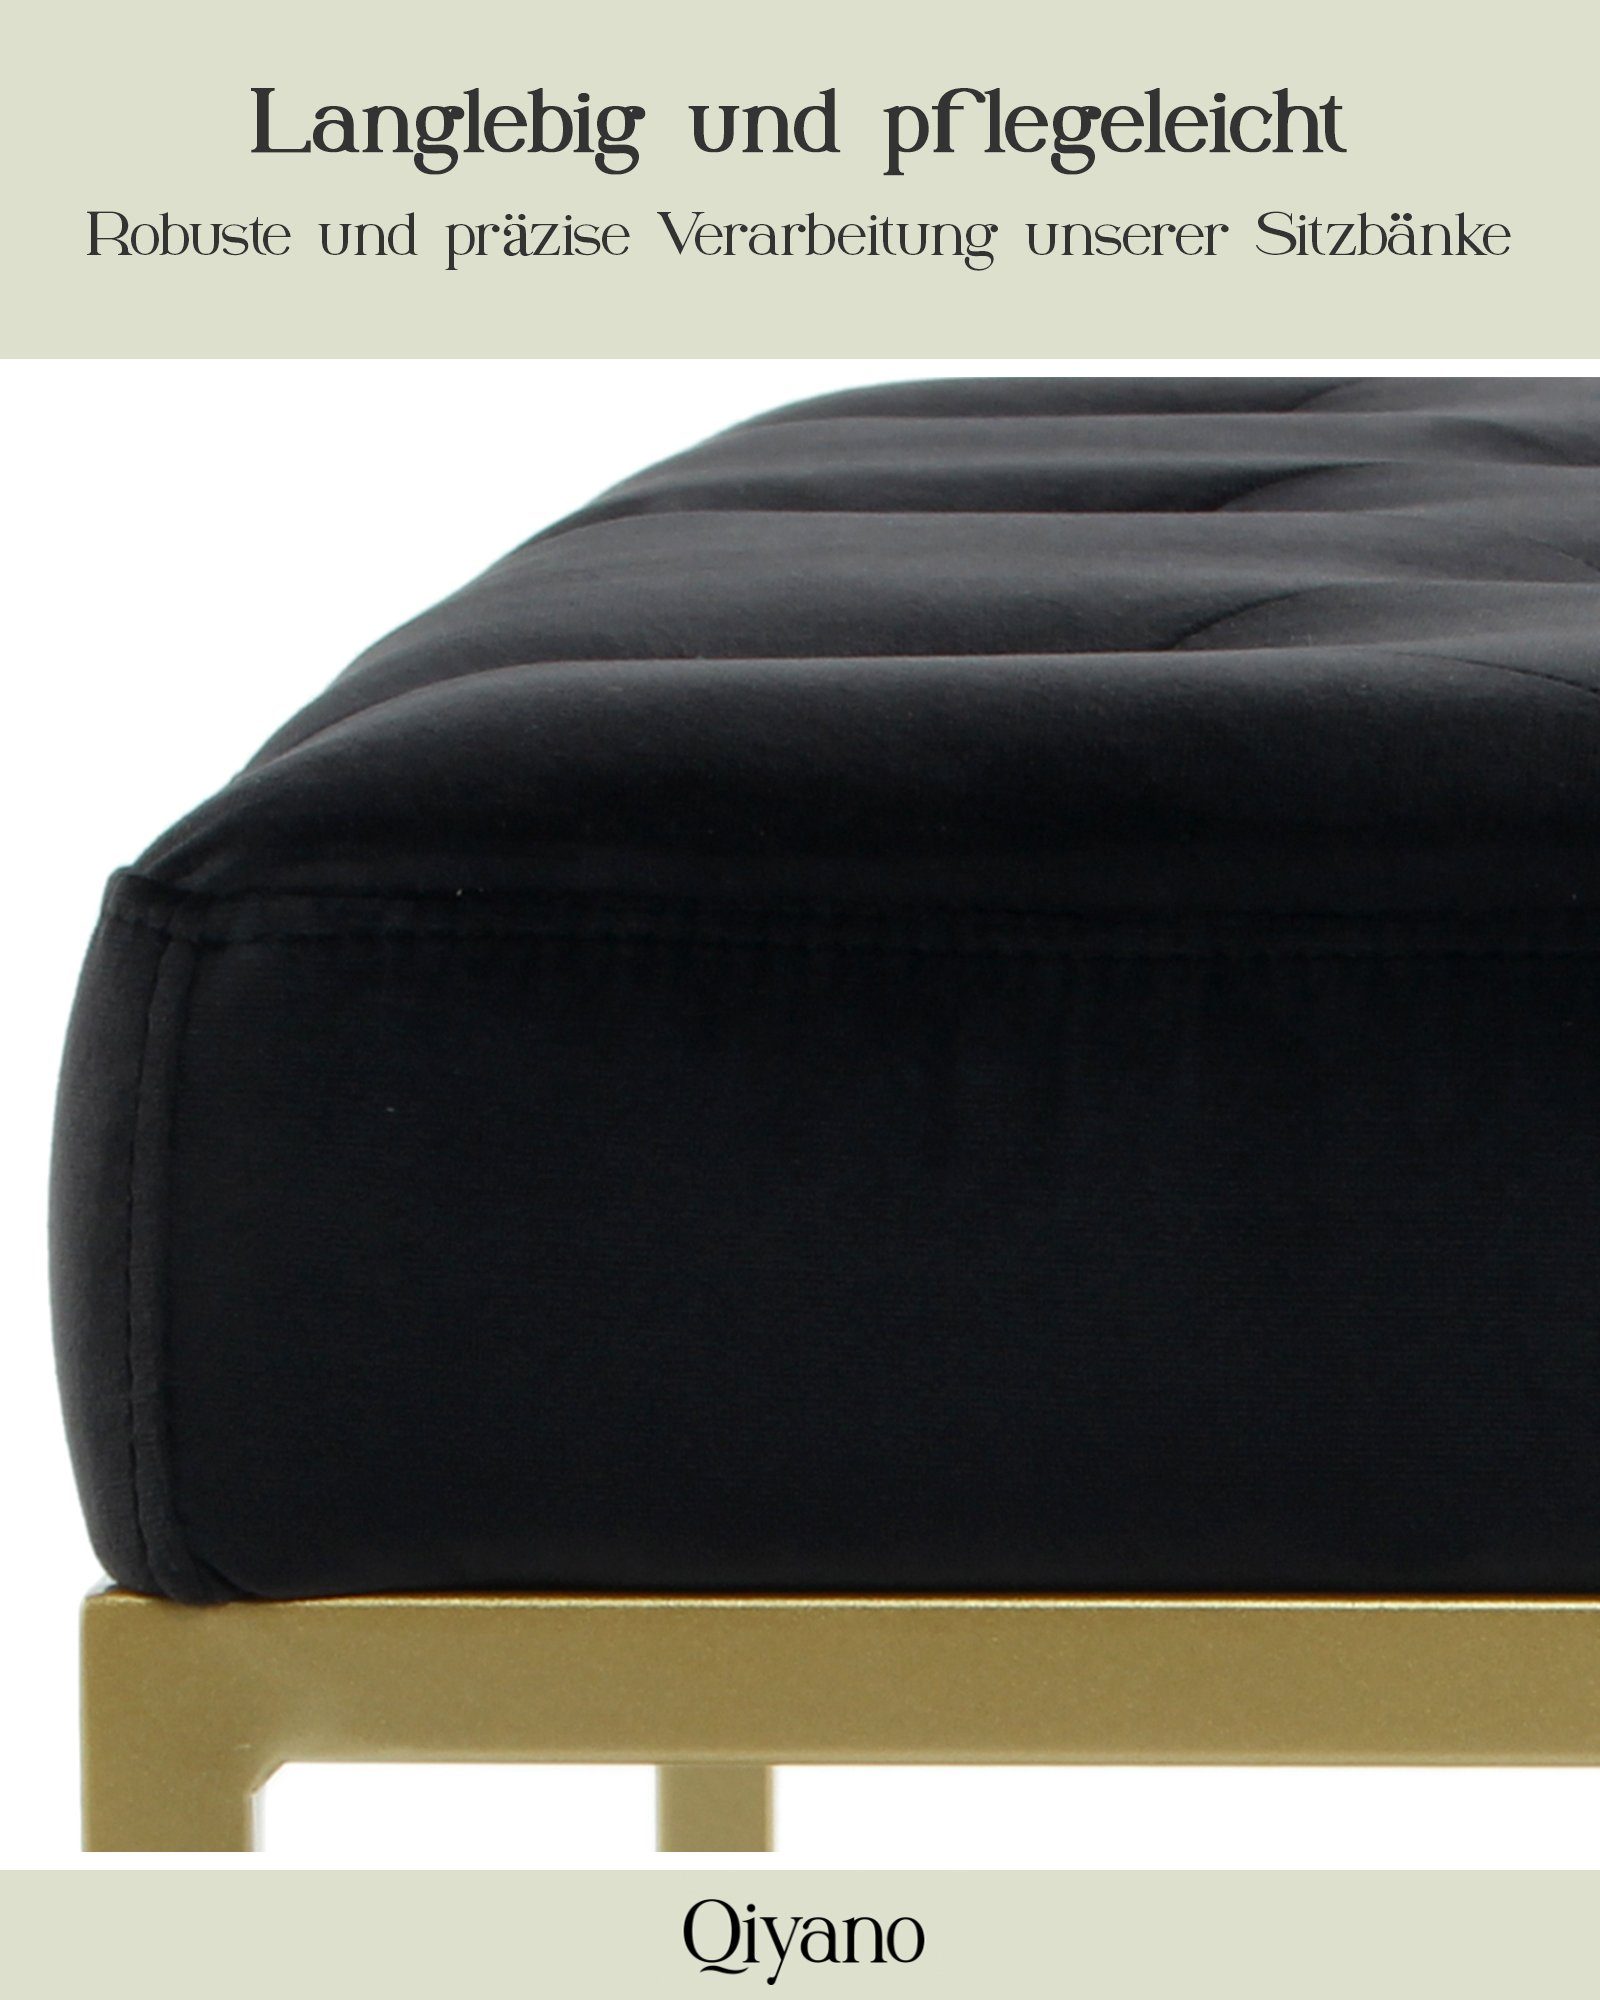 Gesteppte Samt Sitz- Sitzbank Polsterbank Schwarz Metallfüßen mit Qiyano goldenen Barock-Stil